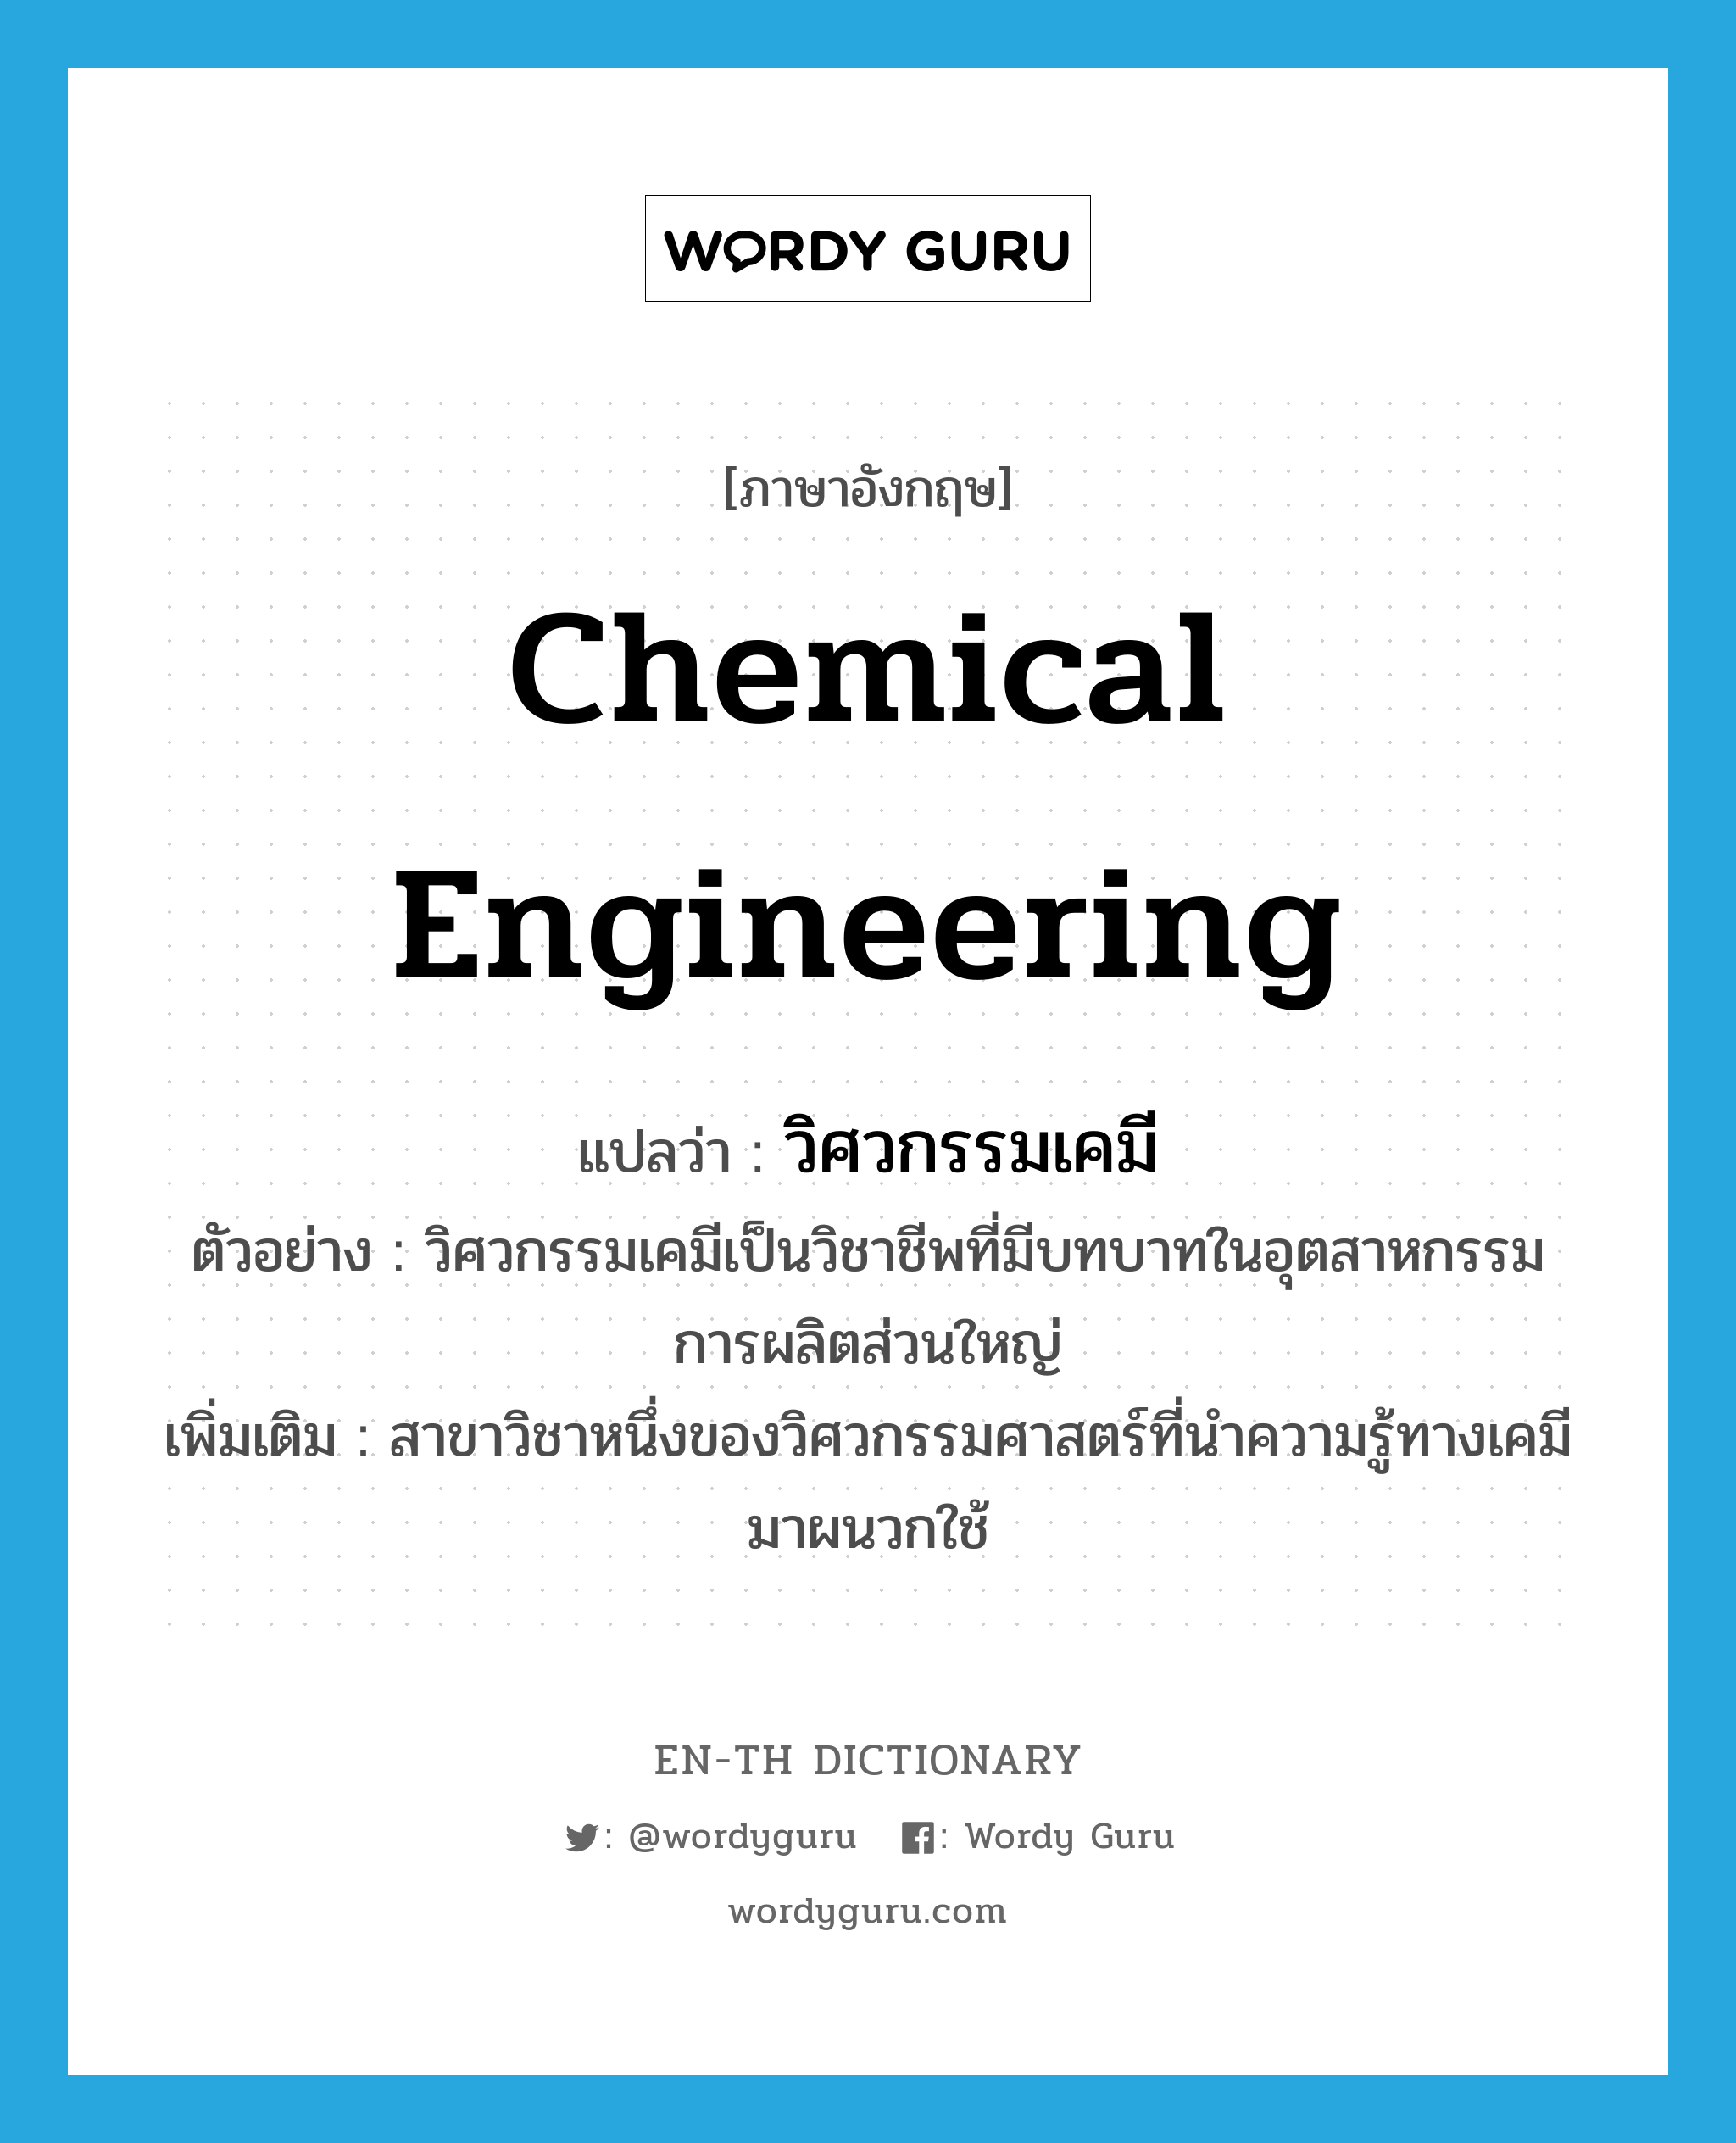 chemical engineering แปลว่า?, คำศัพท์ภาษาอังกฤษ chemical engineering แปลว่า วิศวกรรมเคมี ประเภท N ตัวอย่าง วิศวกรรมเคมีเป็นวิชาชีพที่มีบทบาทในอุตสาหกรรมการผลิตส่วนใหญ่ เพิ่มเติม สาขาวิชาหนึ่งของวิศวกรรมศาสตร์ที่นำความรู้ทางเคมีมาผนวกใช้ หมวด N